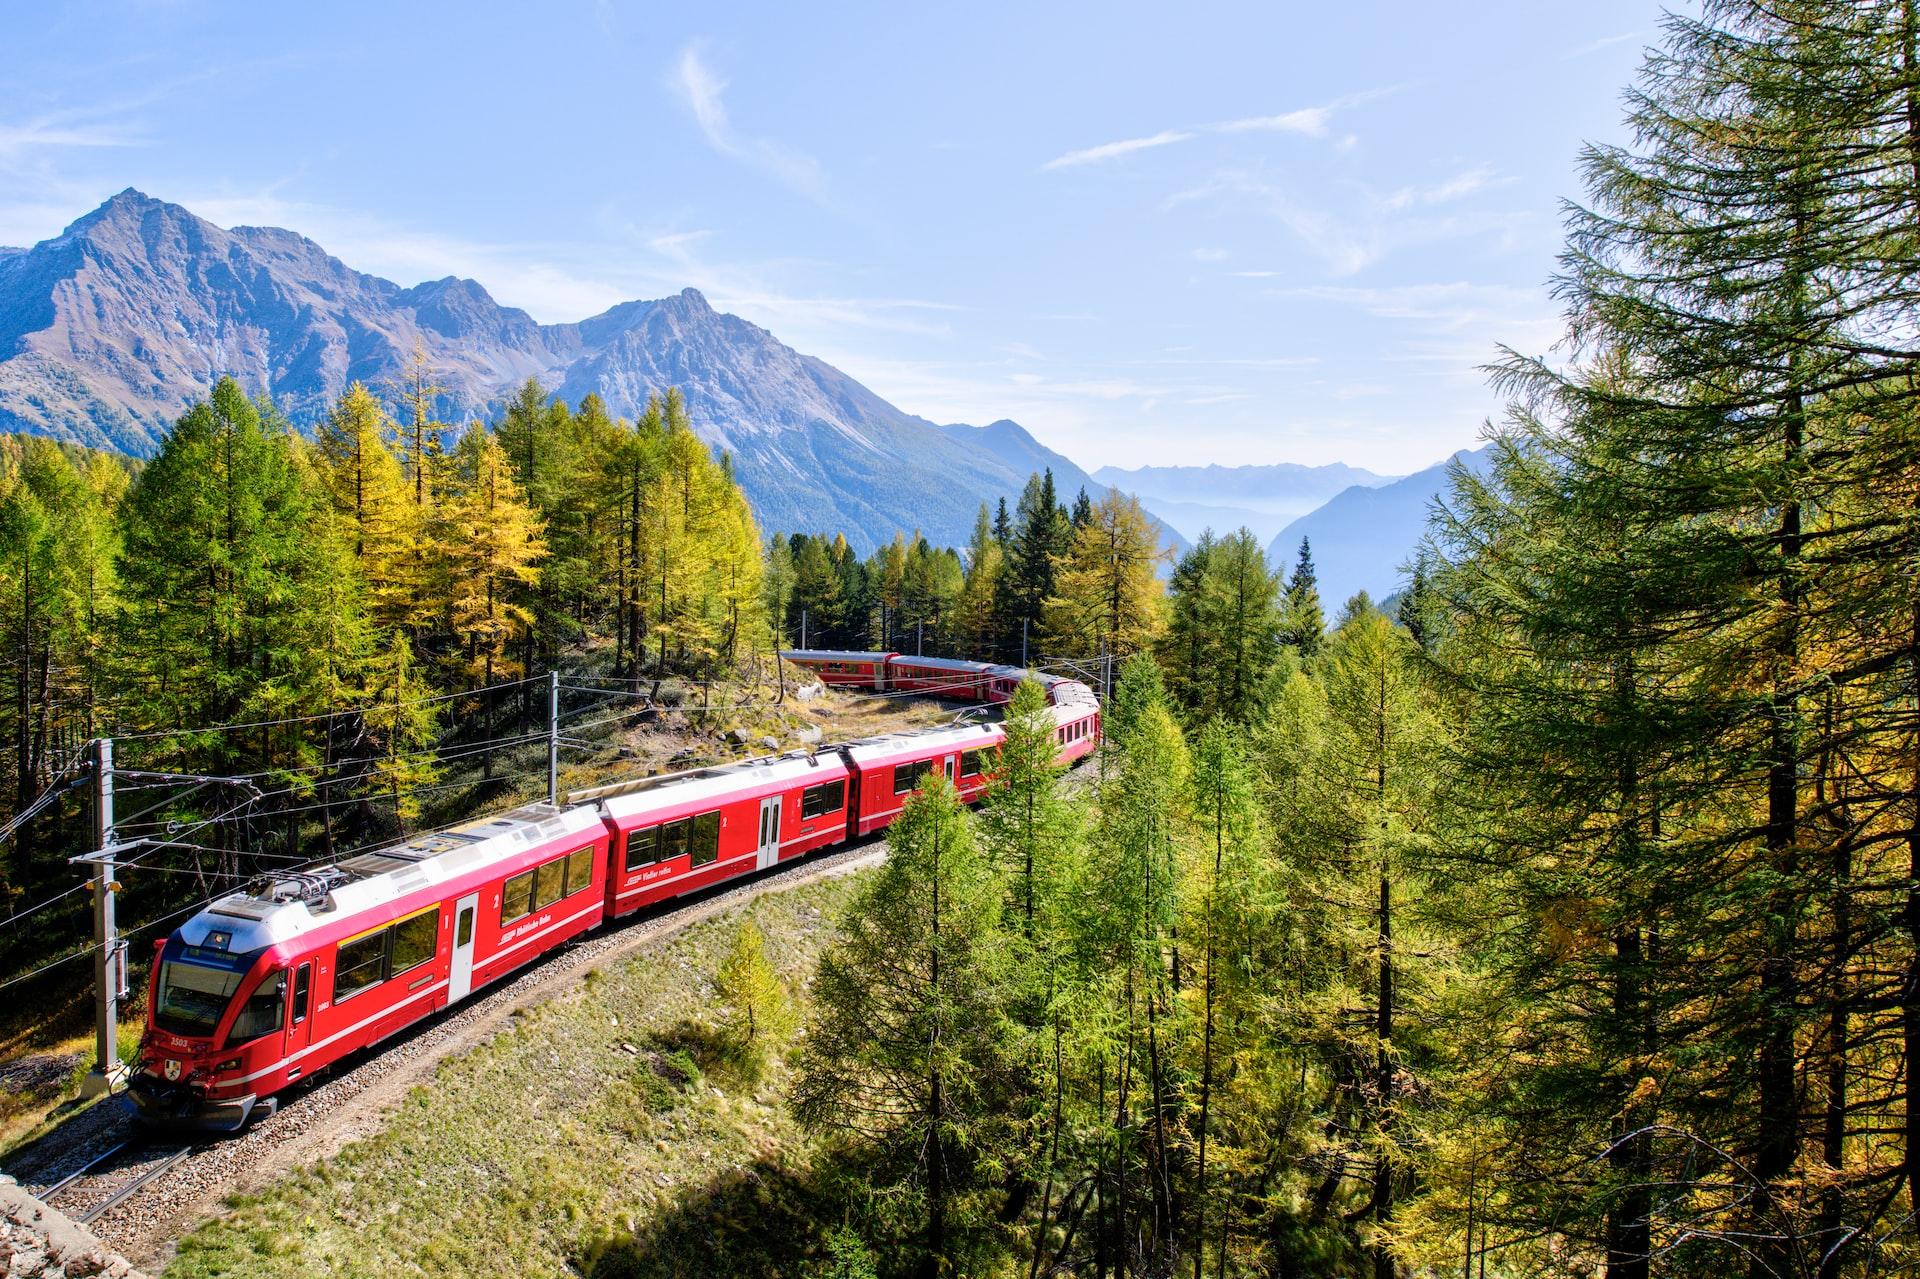 Rode trein rijdt over het spoor tussen de naaldbomen. Het einde van de trein is niet zichtbaar in de bocht. Op de achtergrond zijn hoge bergen te zien. De zon schijnt.